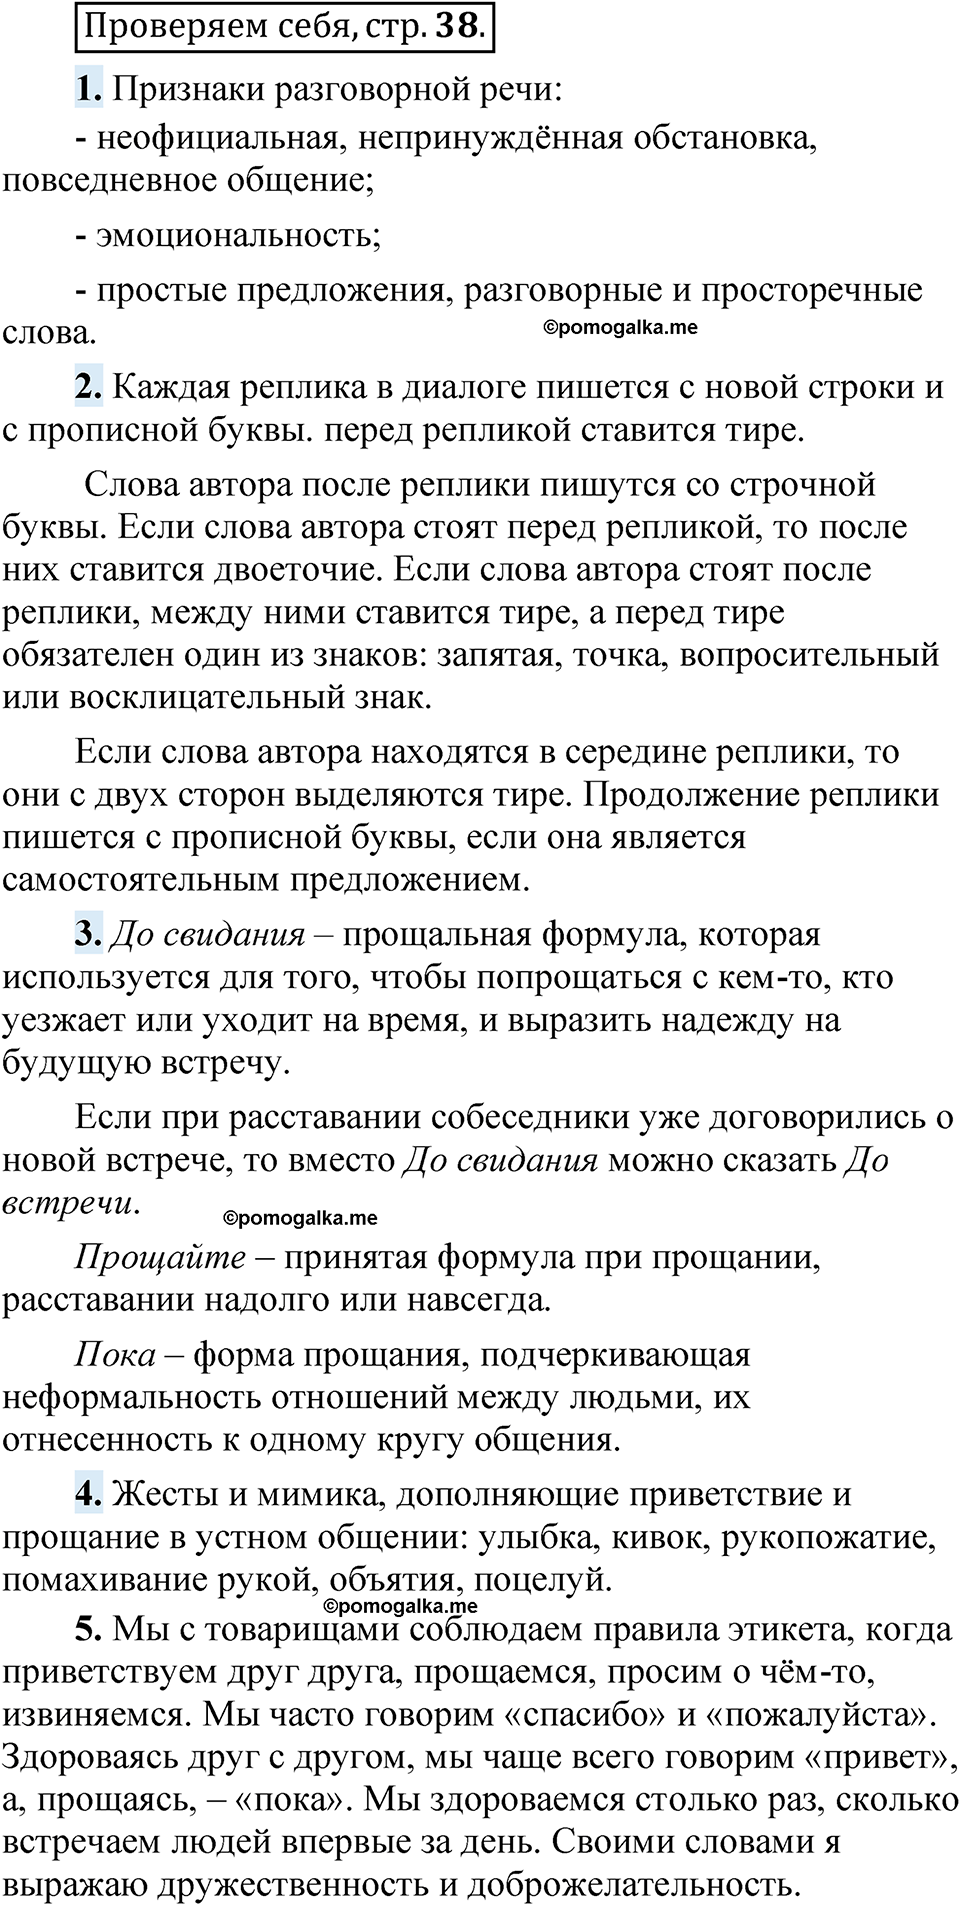 страница 38 Проверяем себя русский язык 5 класс Быстрова, Кибирева 1 часть 2021 год